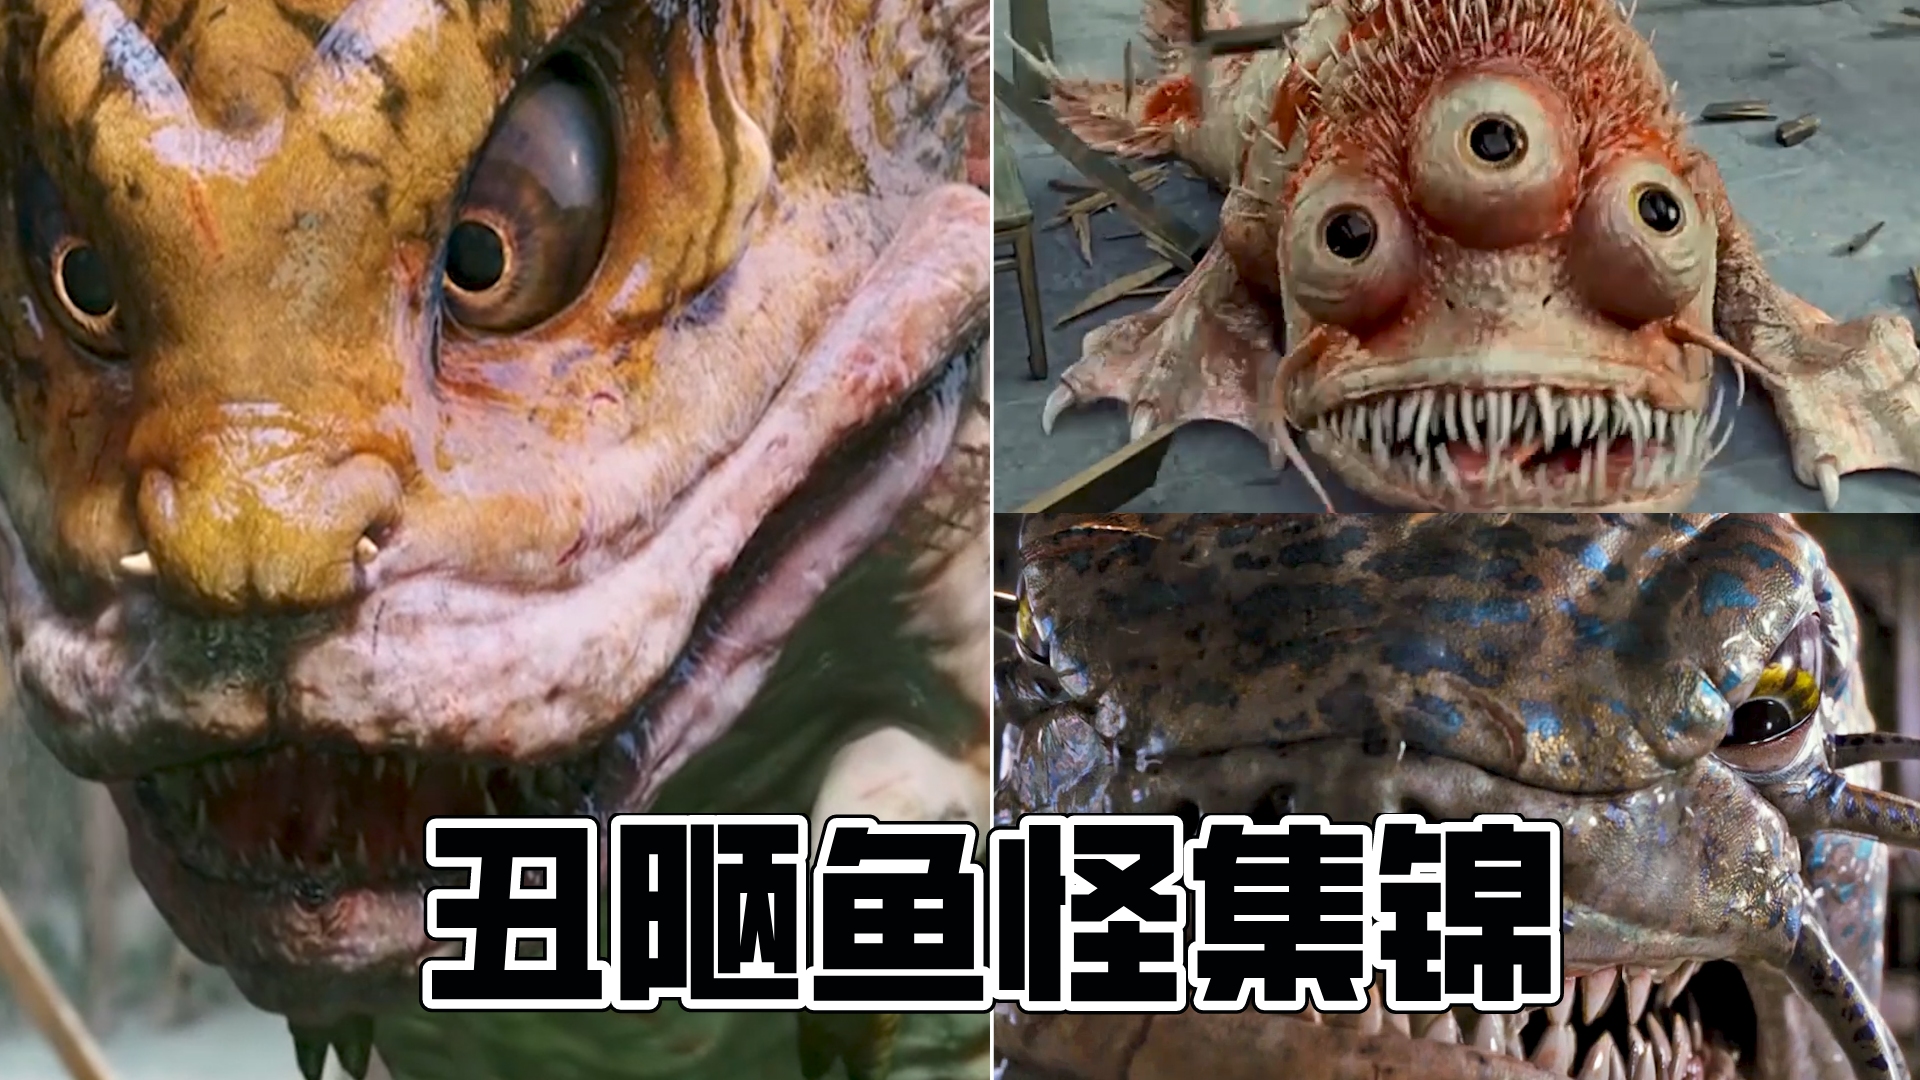 这三部影片中的鱼怪,哪个最凶残,吃小女孩的鱼怪很吓人